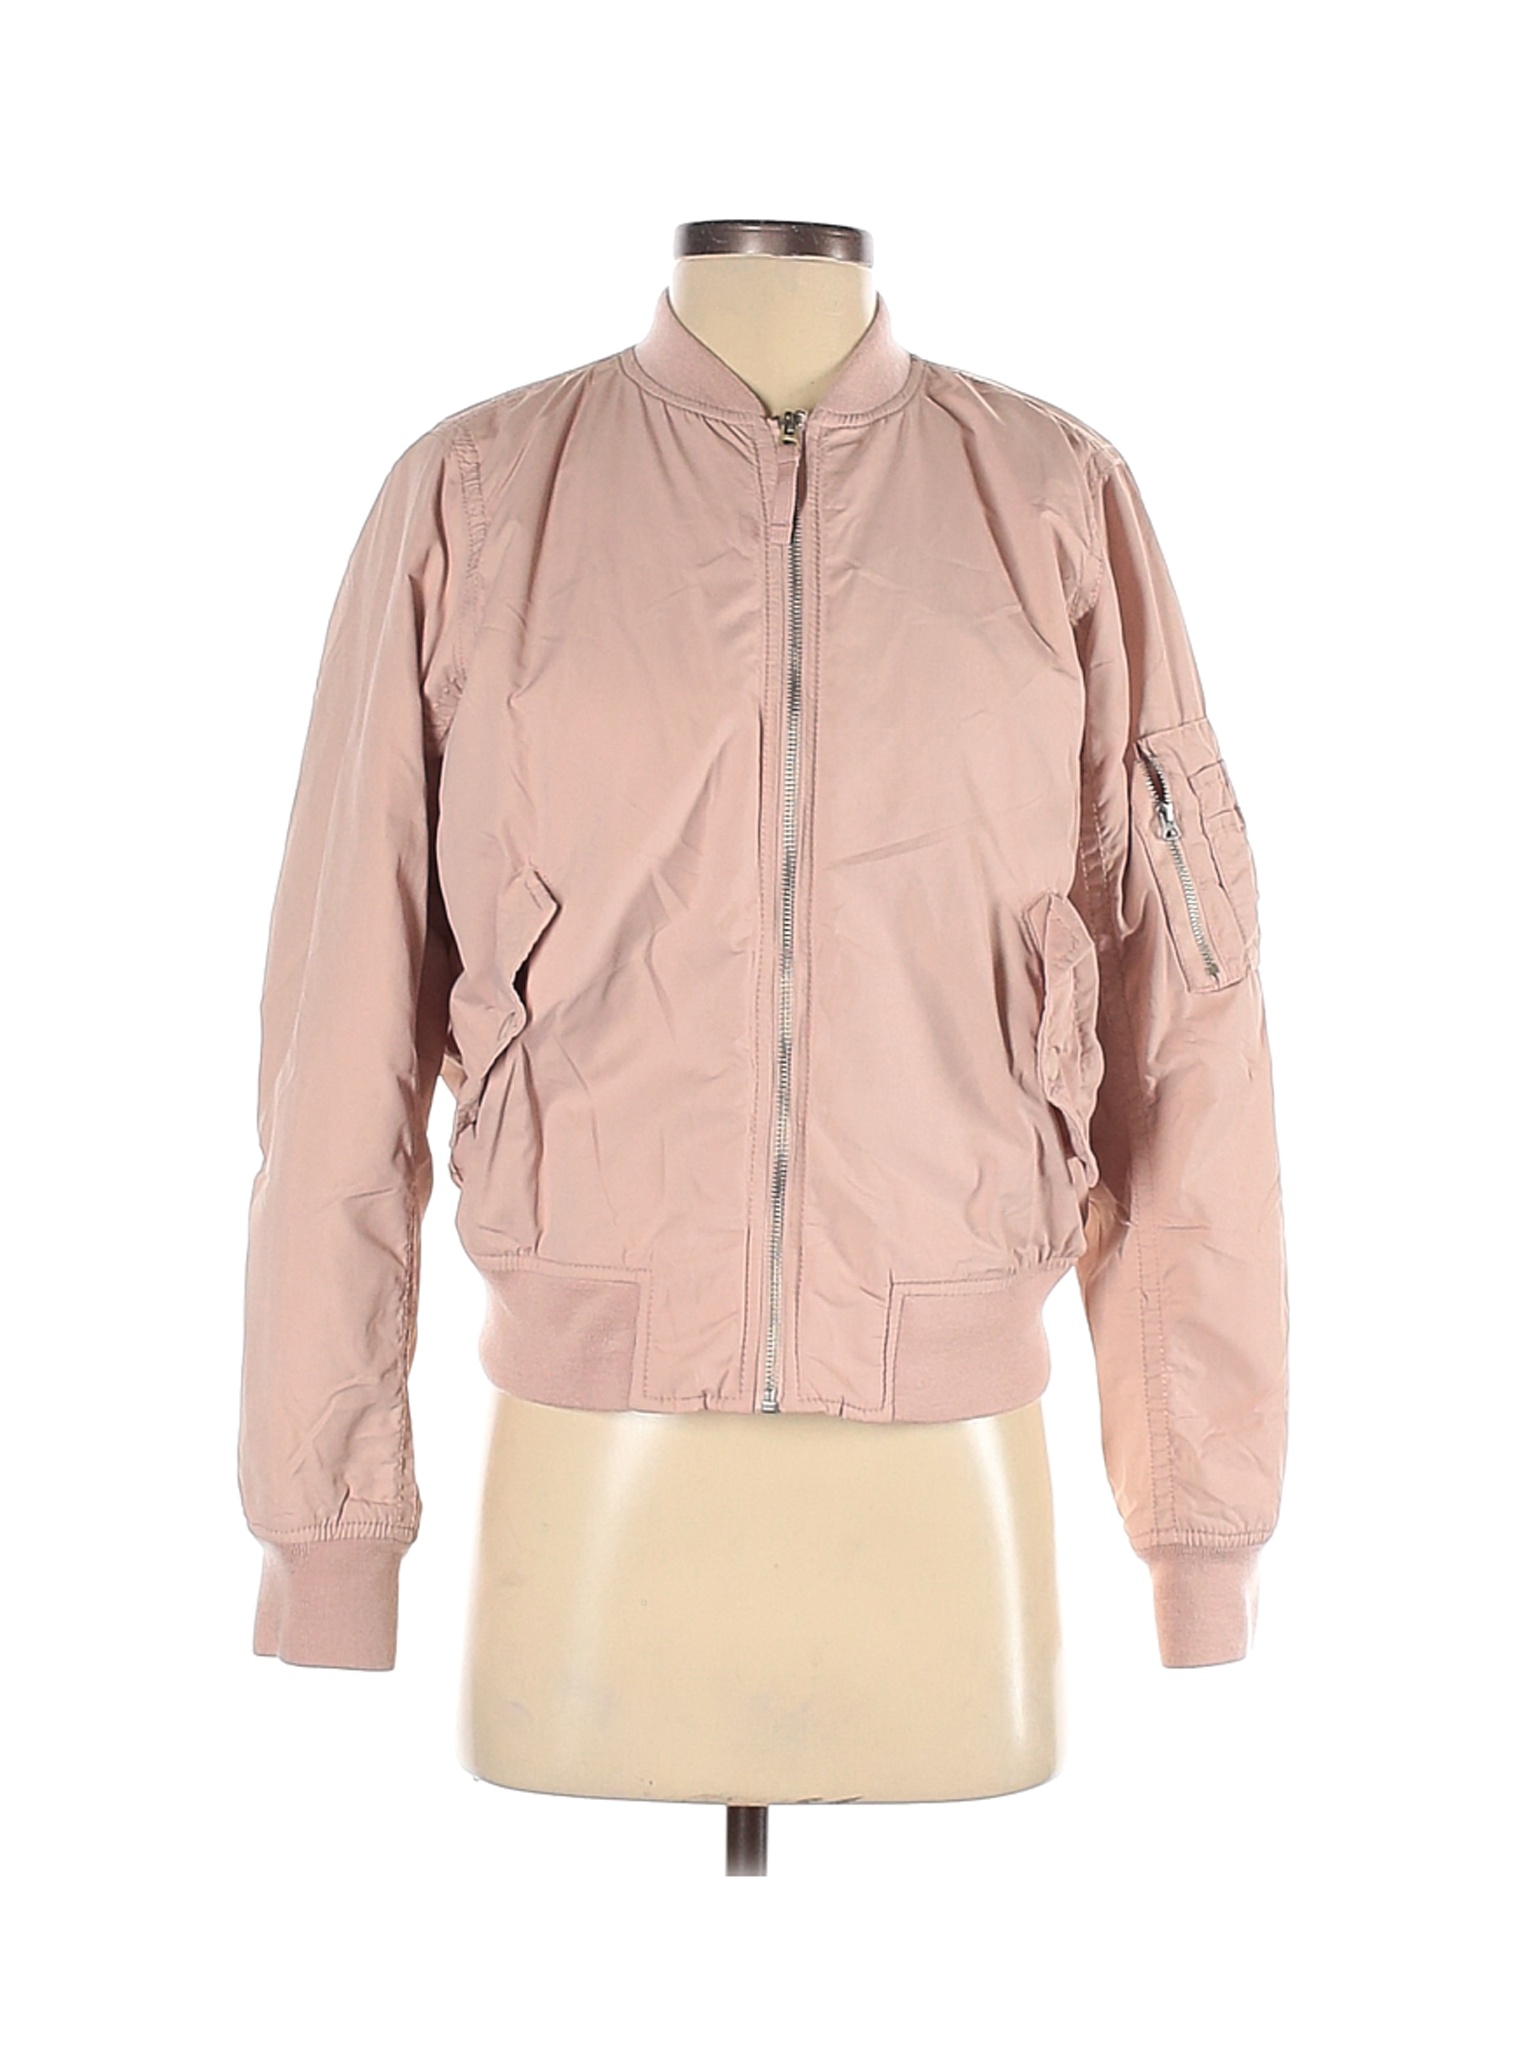 Gap Women Pink Jacket S | eBay